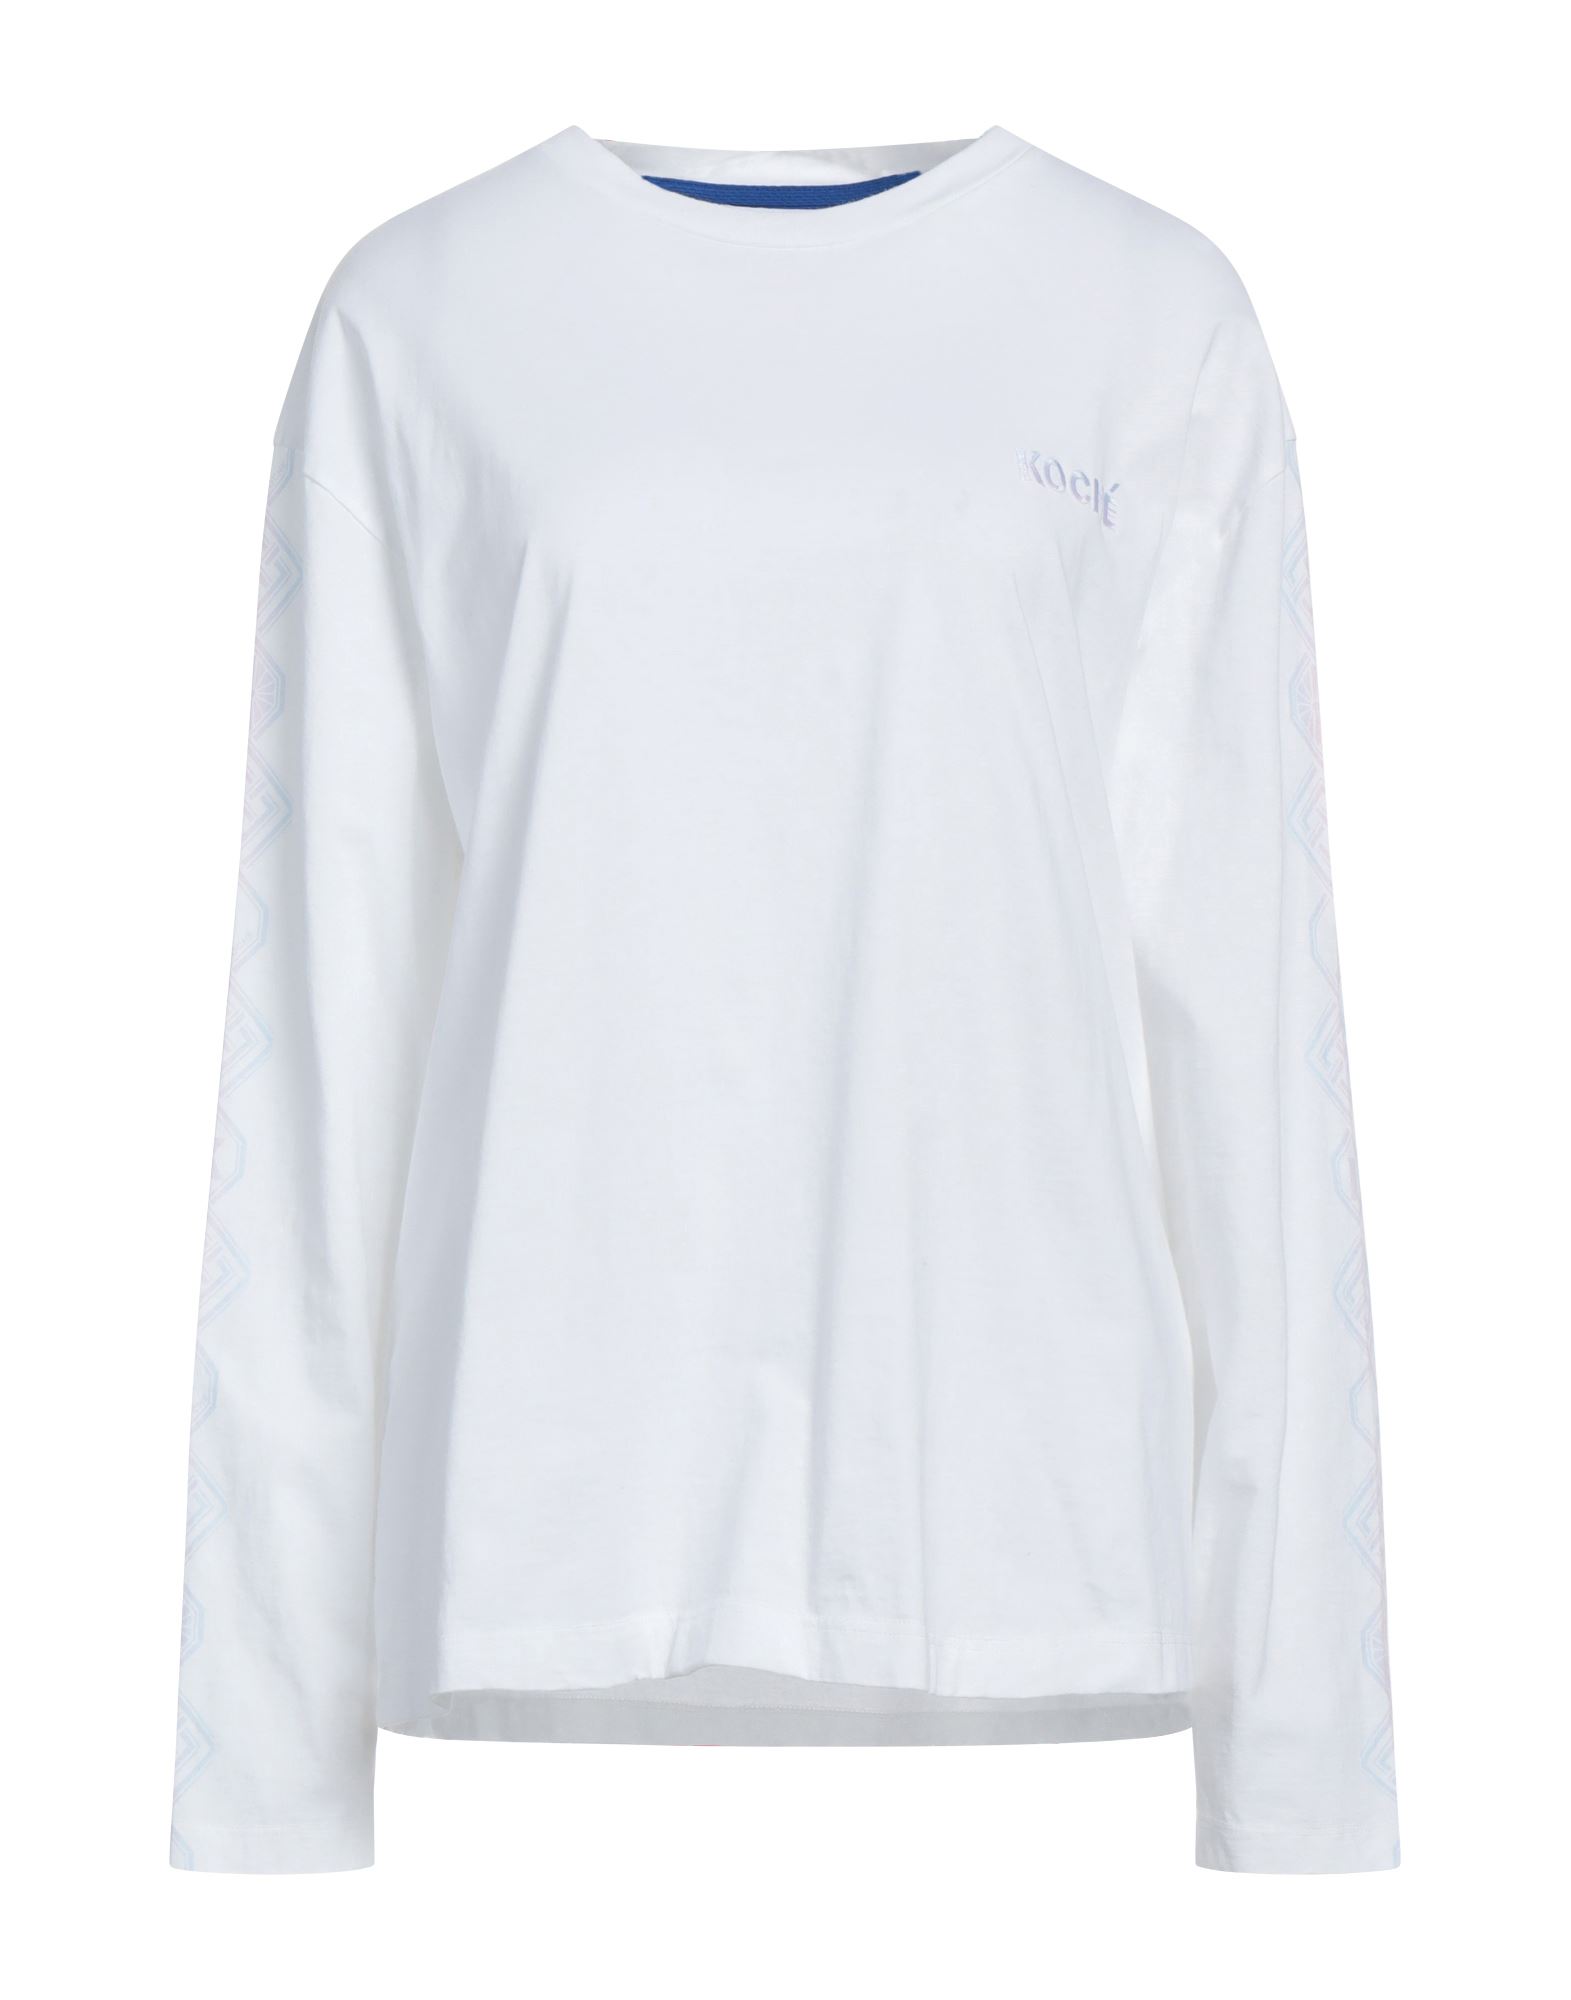 Koché Woman T-shirt White Size Xl Cotton